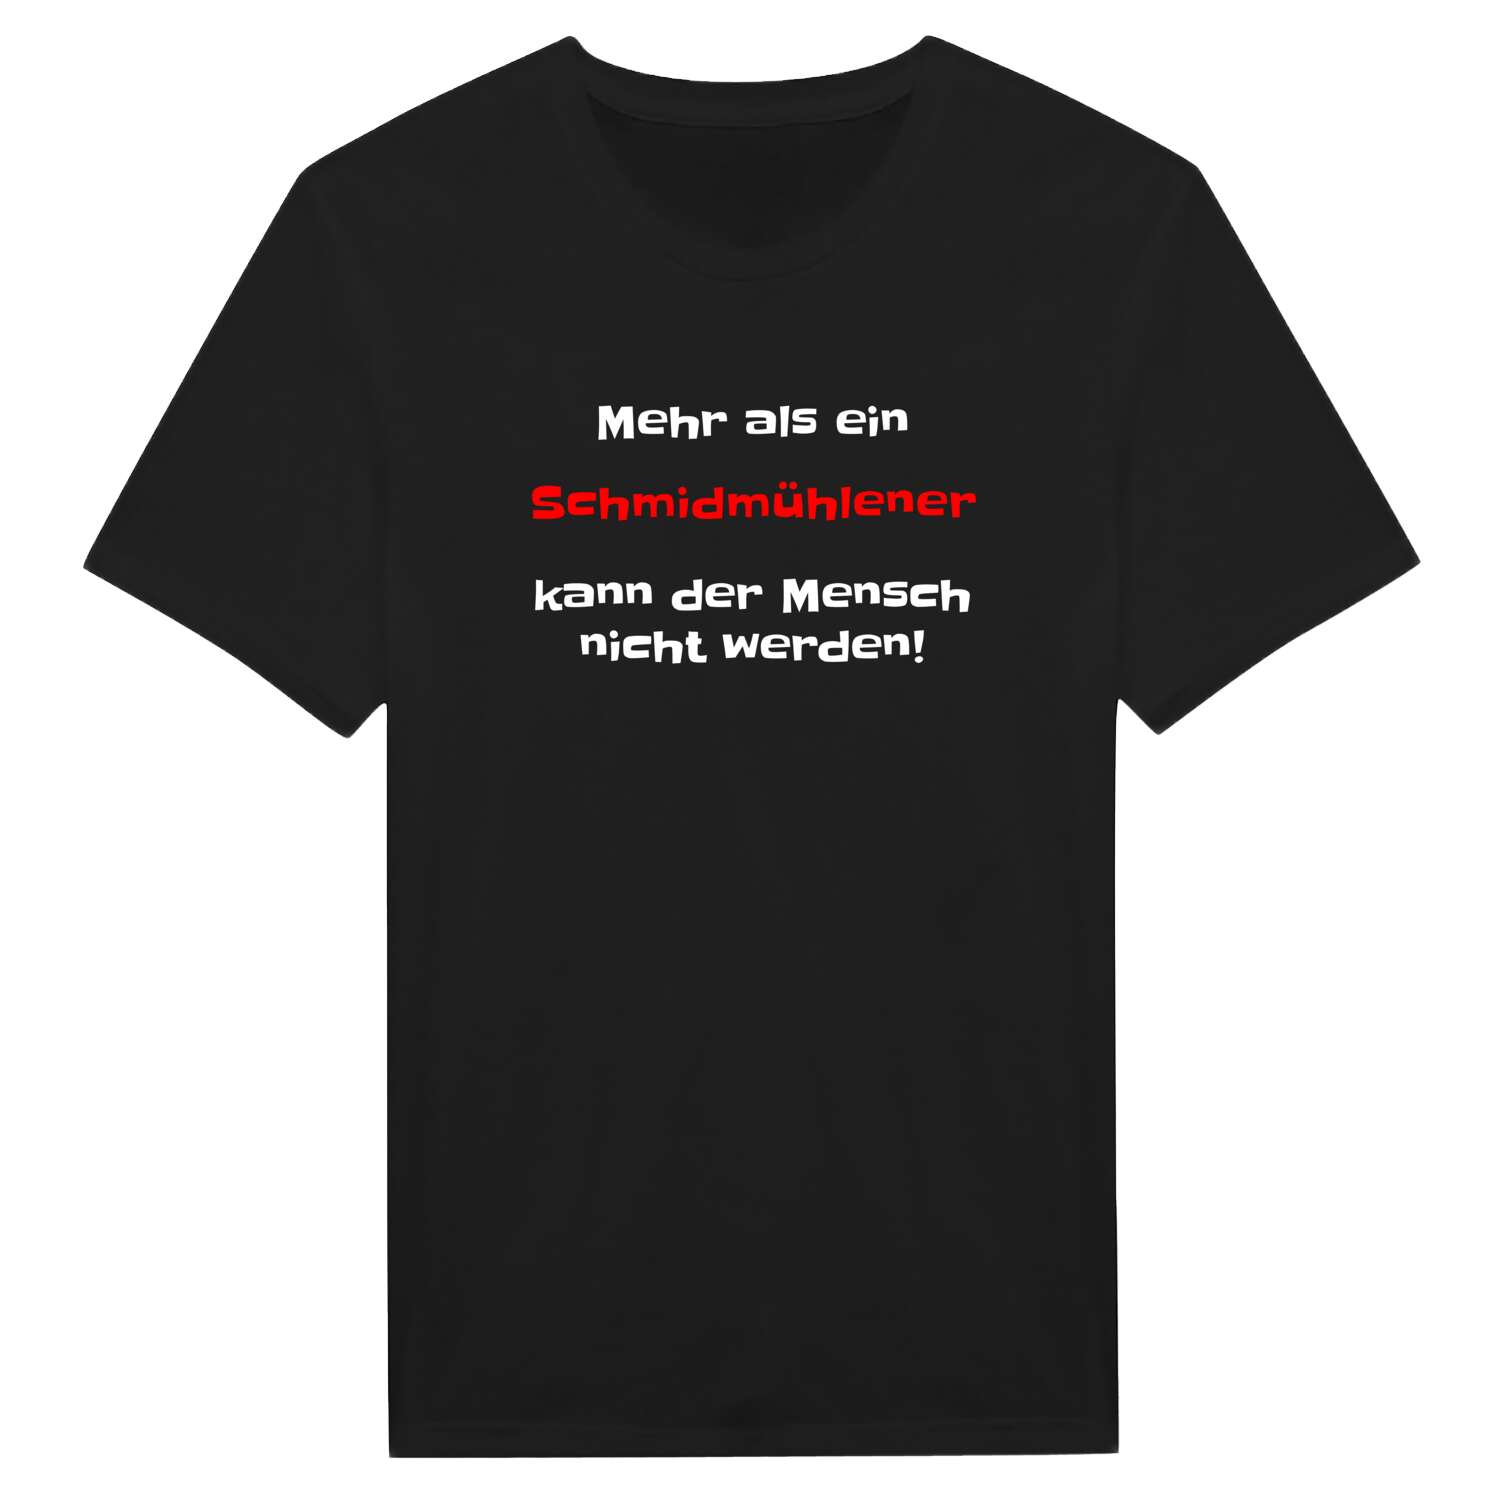 Schmidmühlen T-Shirt »Mehr als ein«